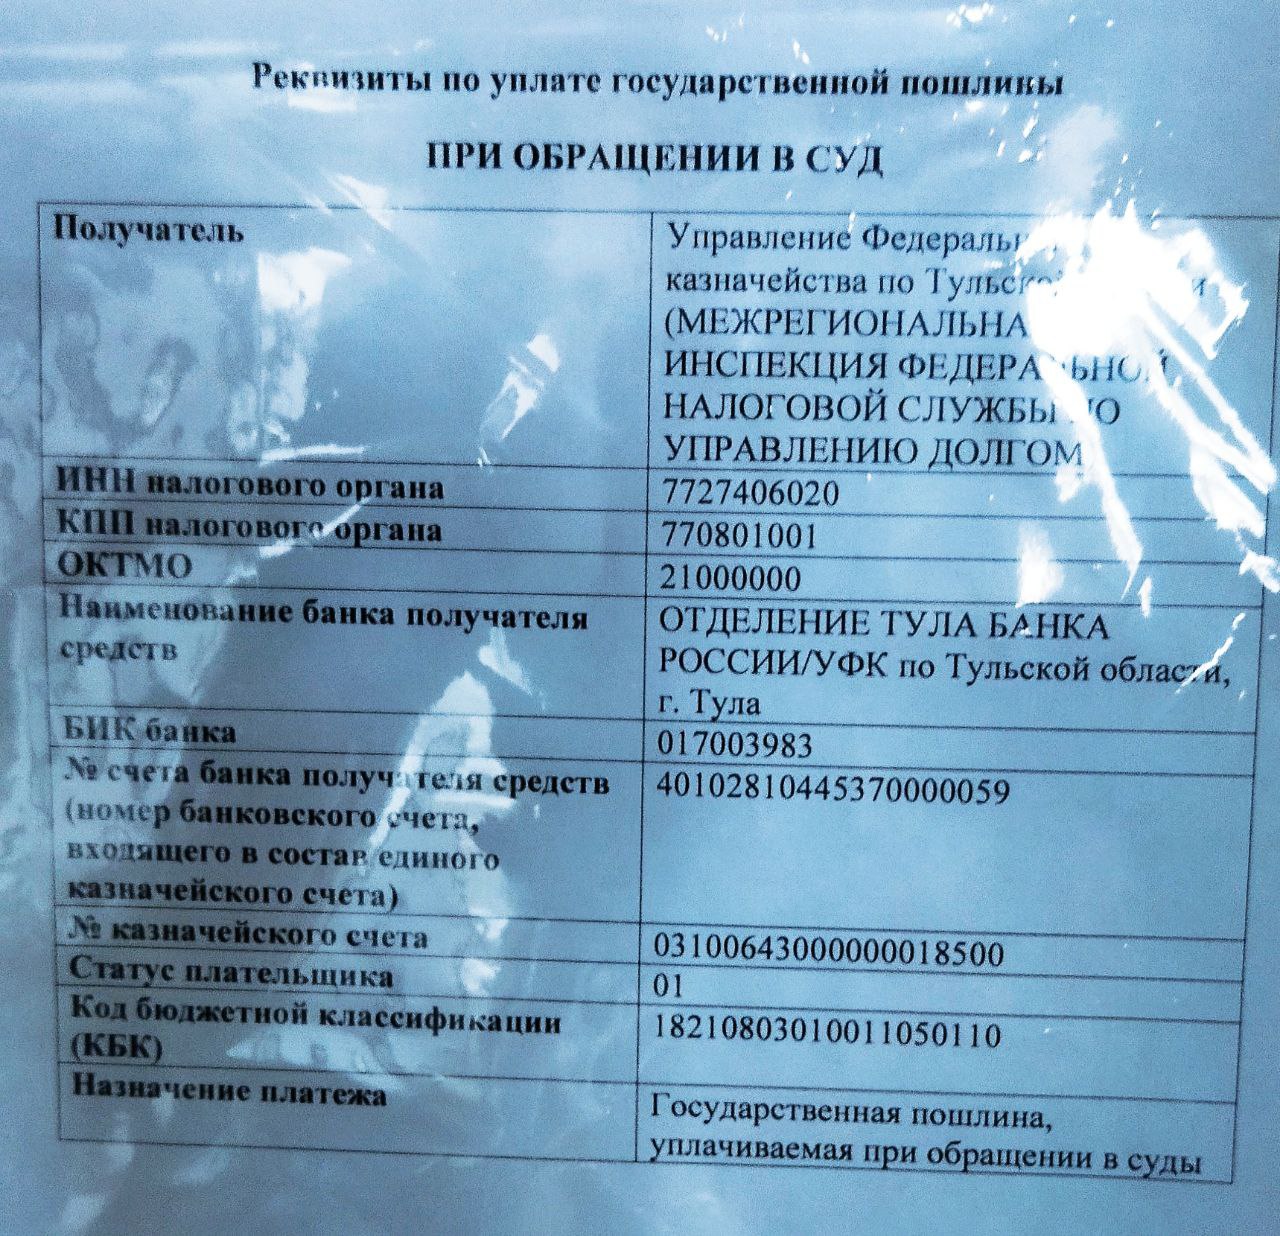 Реквизиты для оплаты гос пошлины в Буденновский районный суд